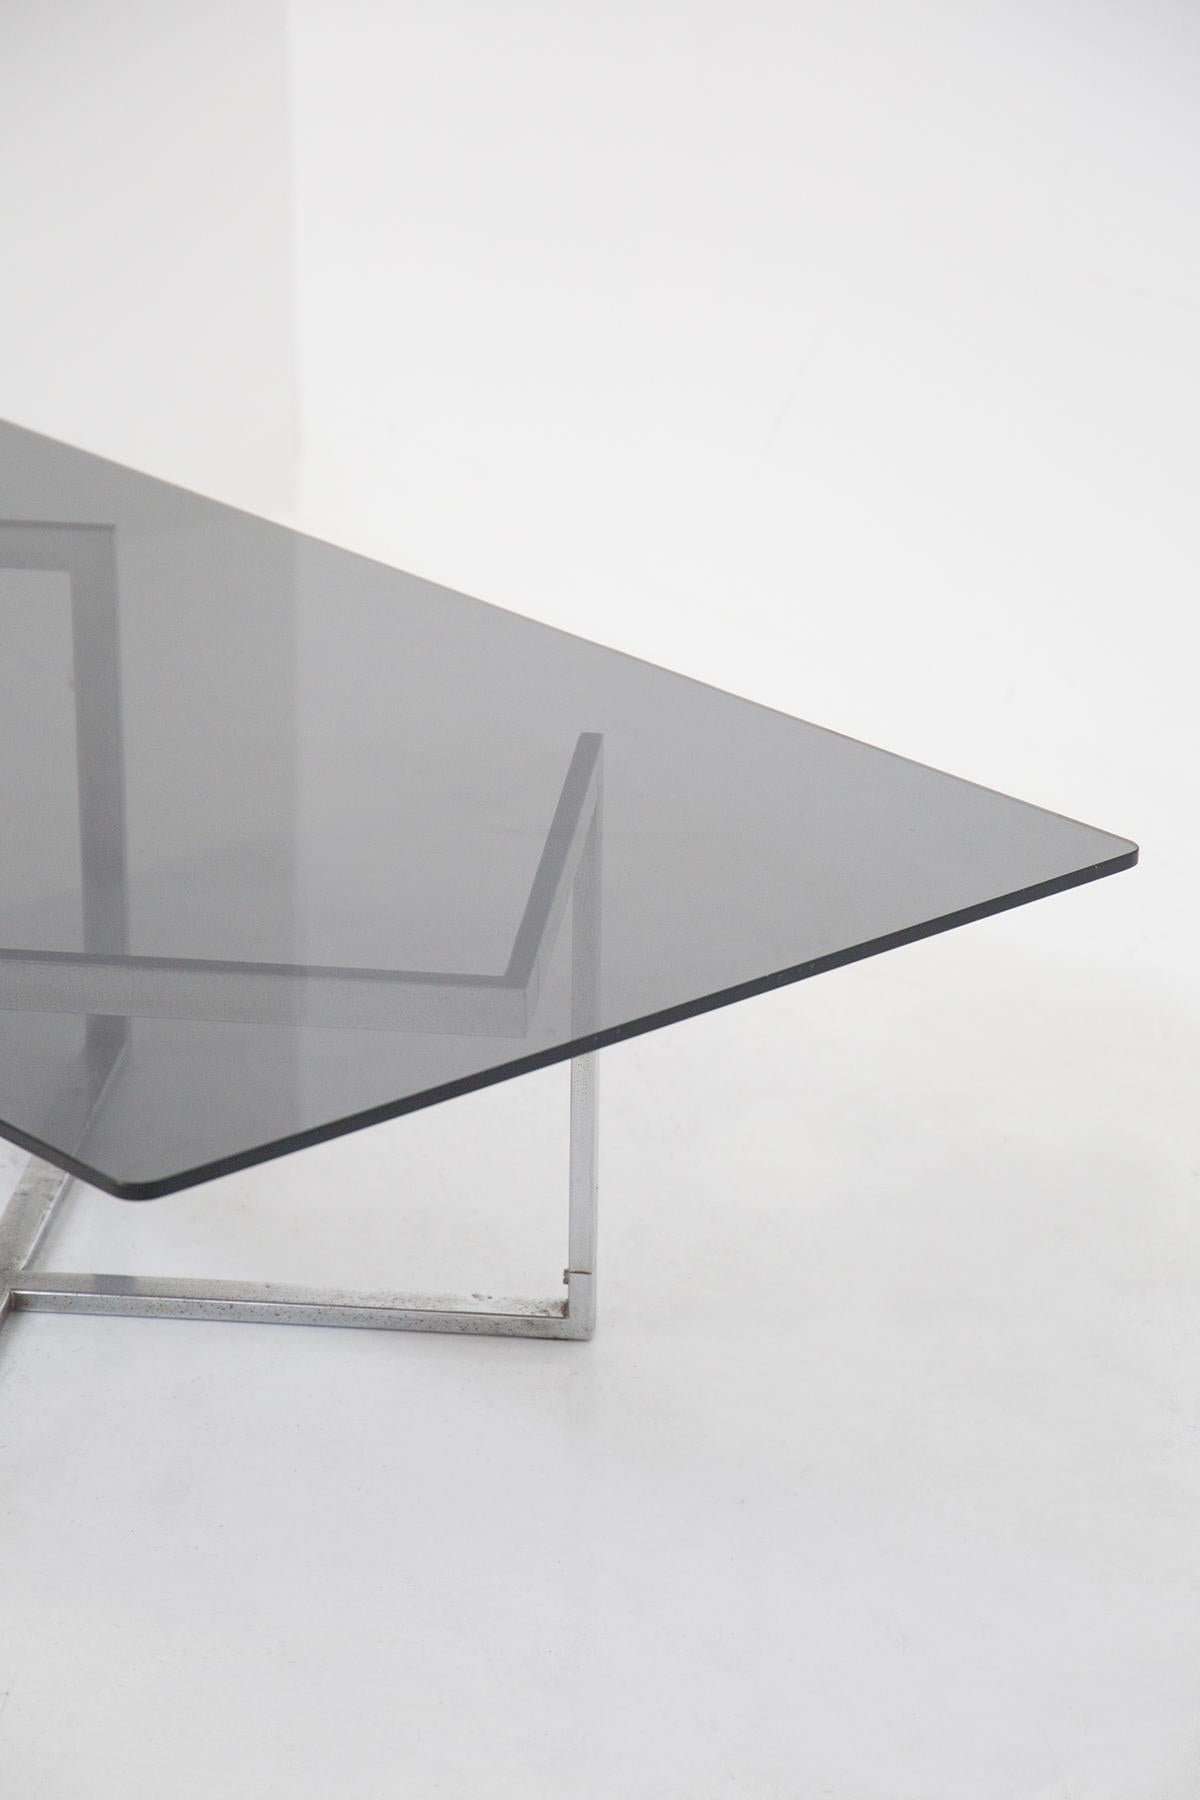 Merveilleuse table de fumeur en verre et acier conçue par Vittorio Introini dans les années 70, provenant de la résidence de Vip.
La table a une forme rectangulaire avec des lignes dures et classiques.
Le plateau est réalisé en verre fumé très